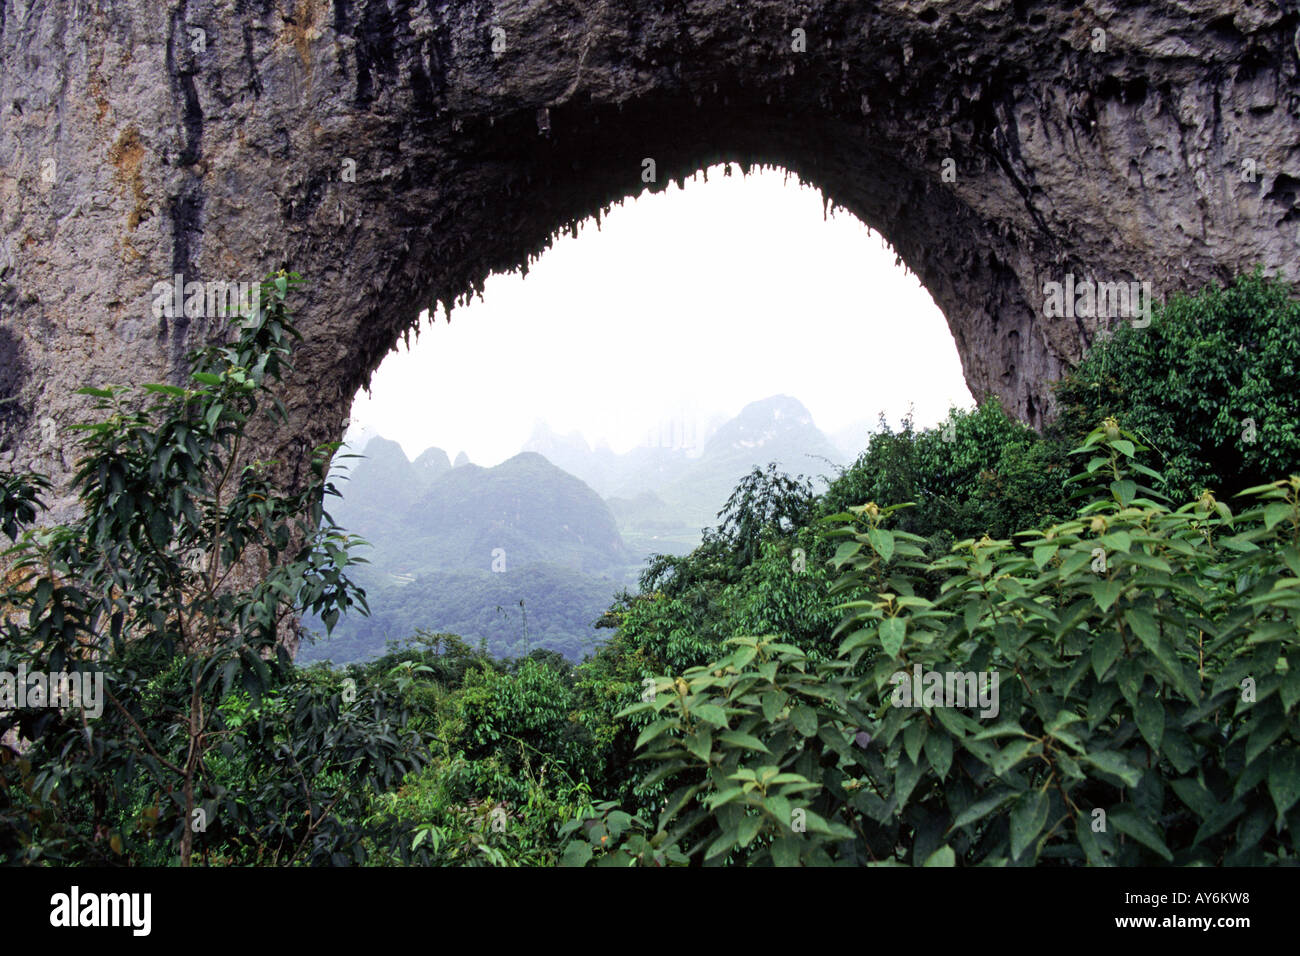 Luna hill e il paesaggio carsico nei pressi del villaggio di Yangshou nella provincia di Guangxi Cina Foto Stock